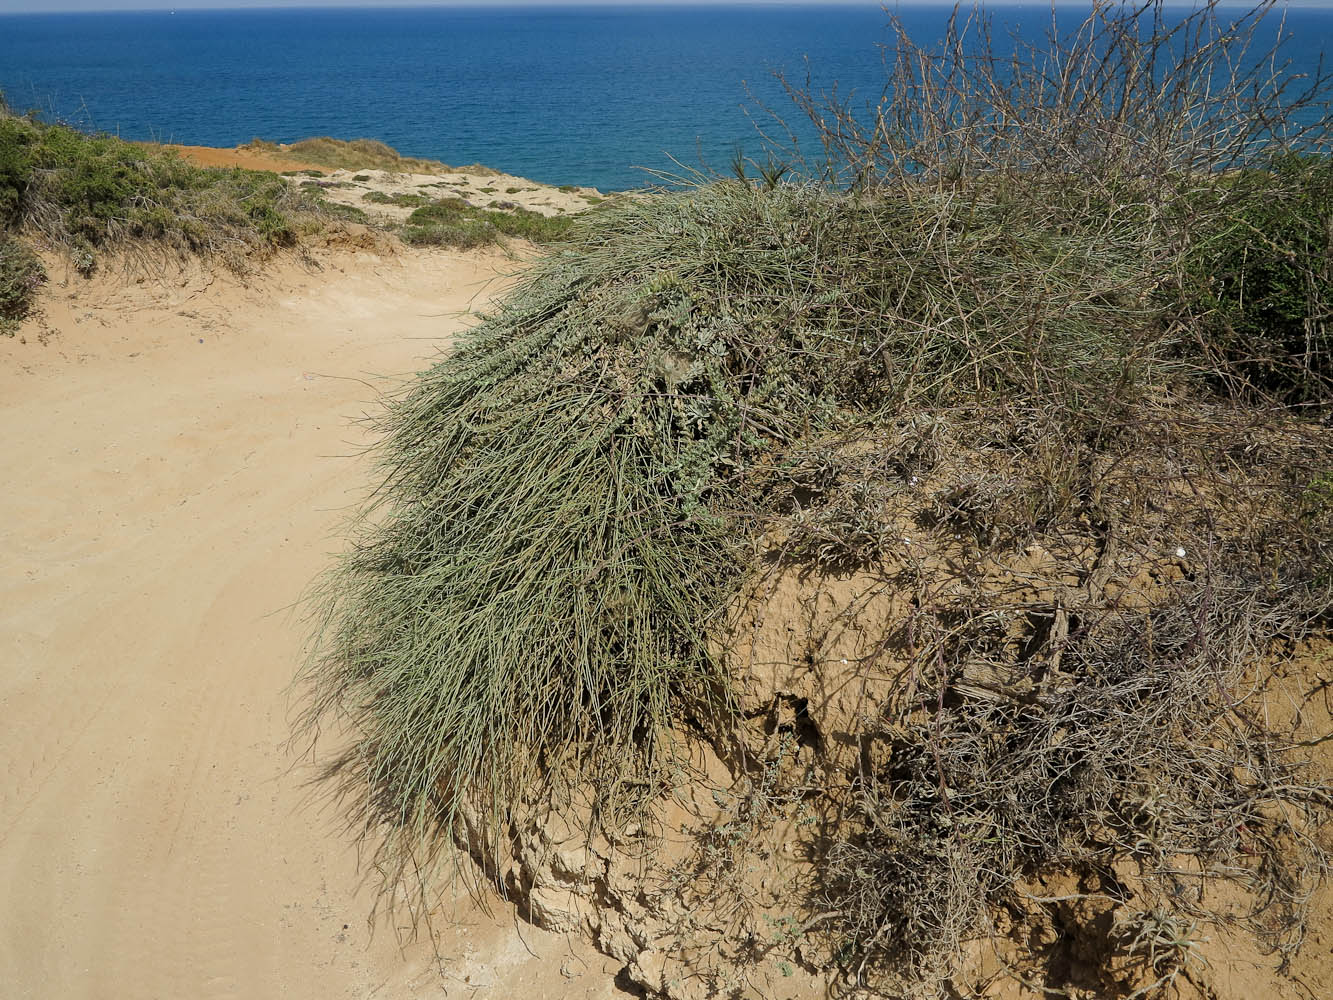 Высокий берег Средиземного моря, изображение ландшафта.